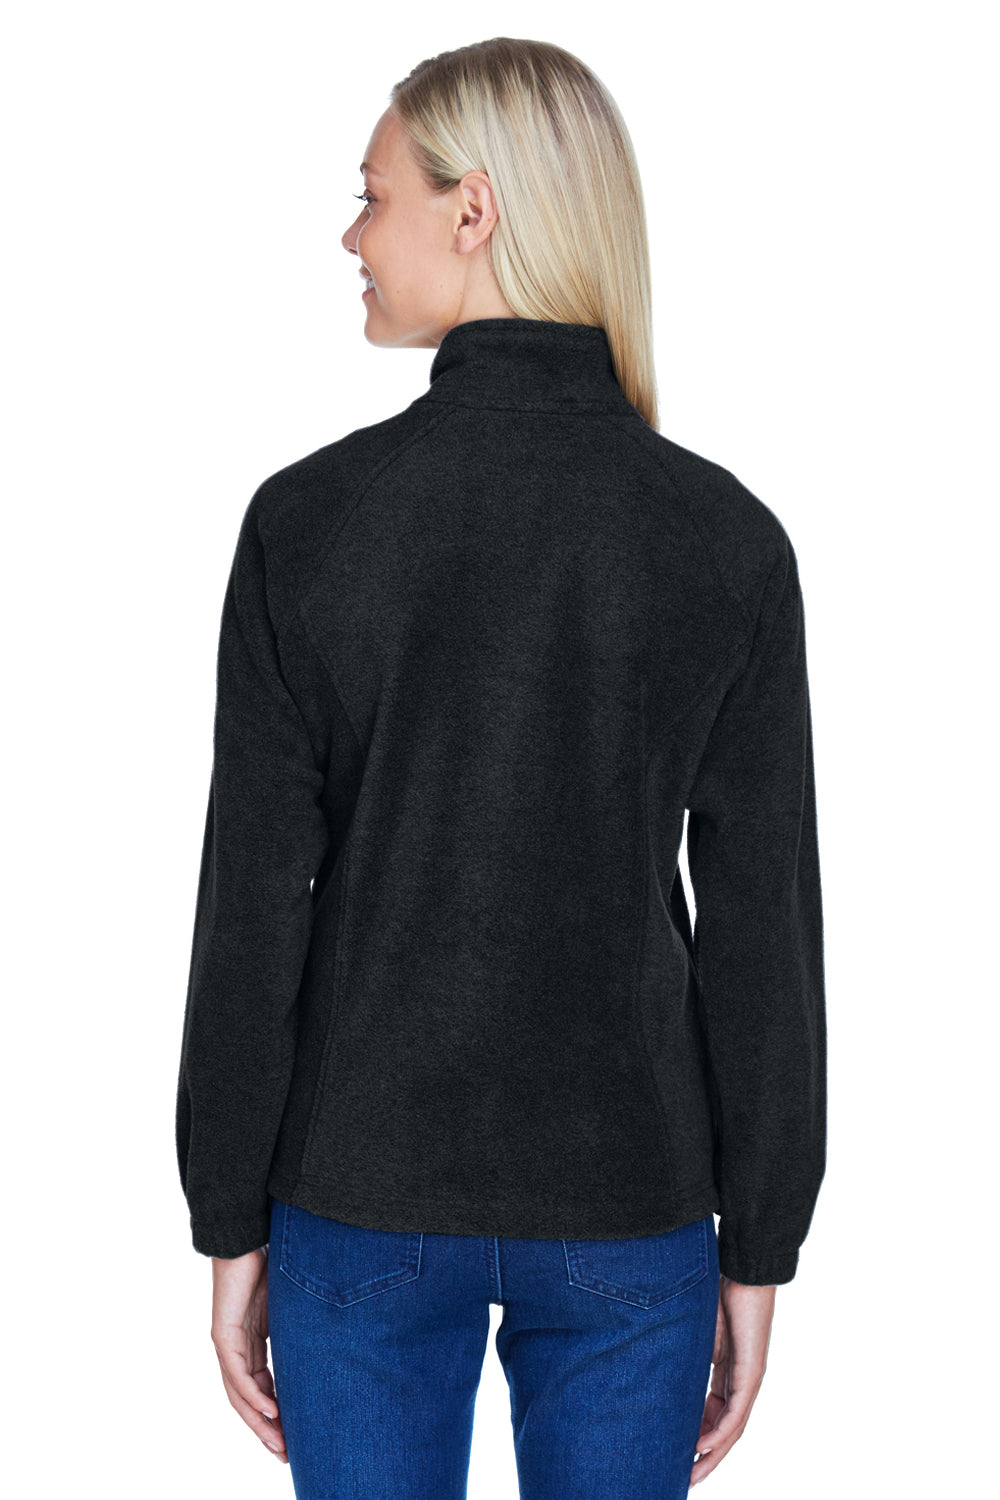 Harriton M990W Womens Full Zip Fleece Jacket Black Back